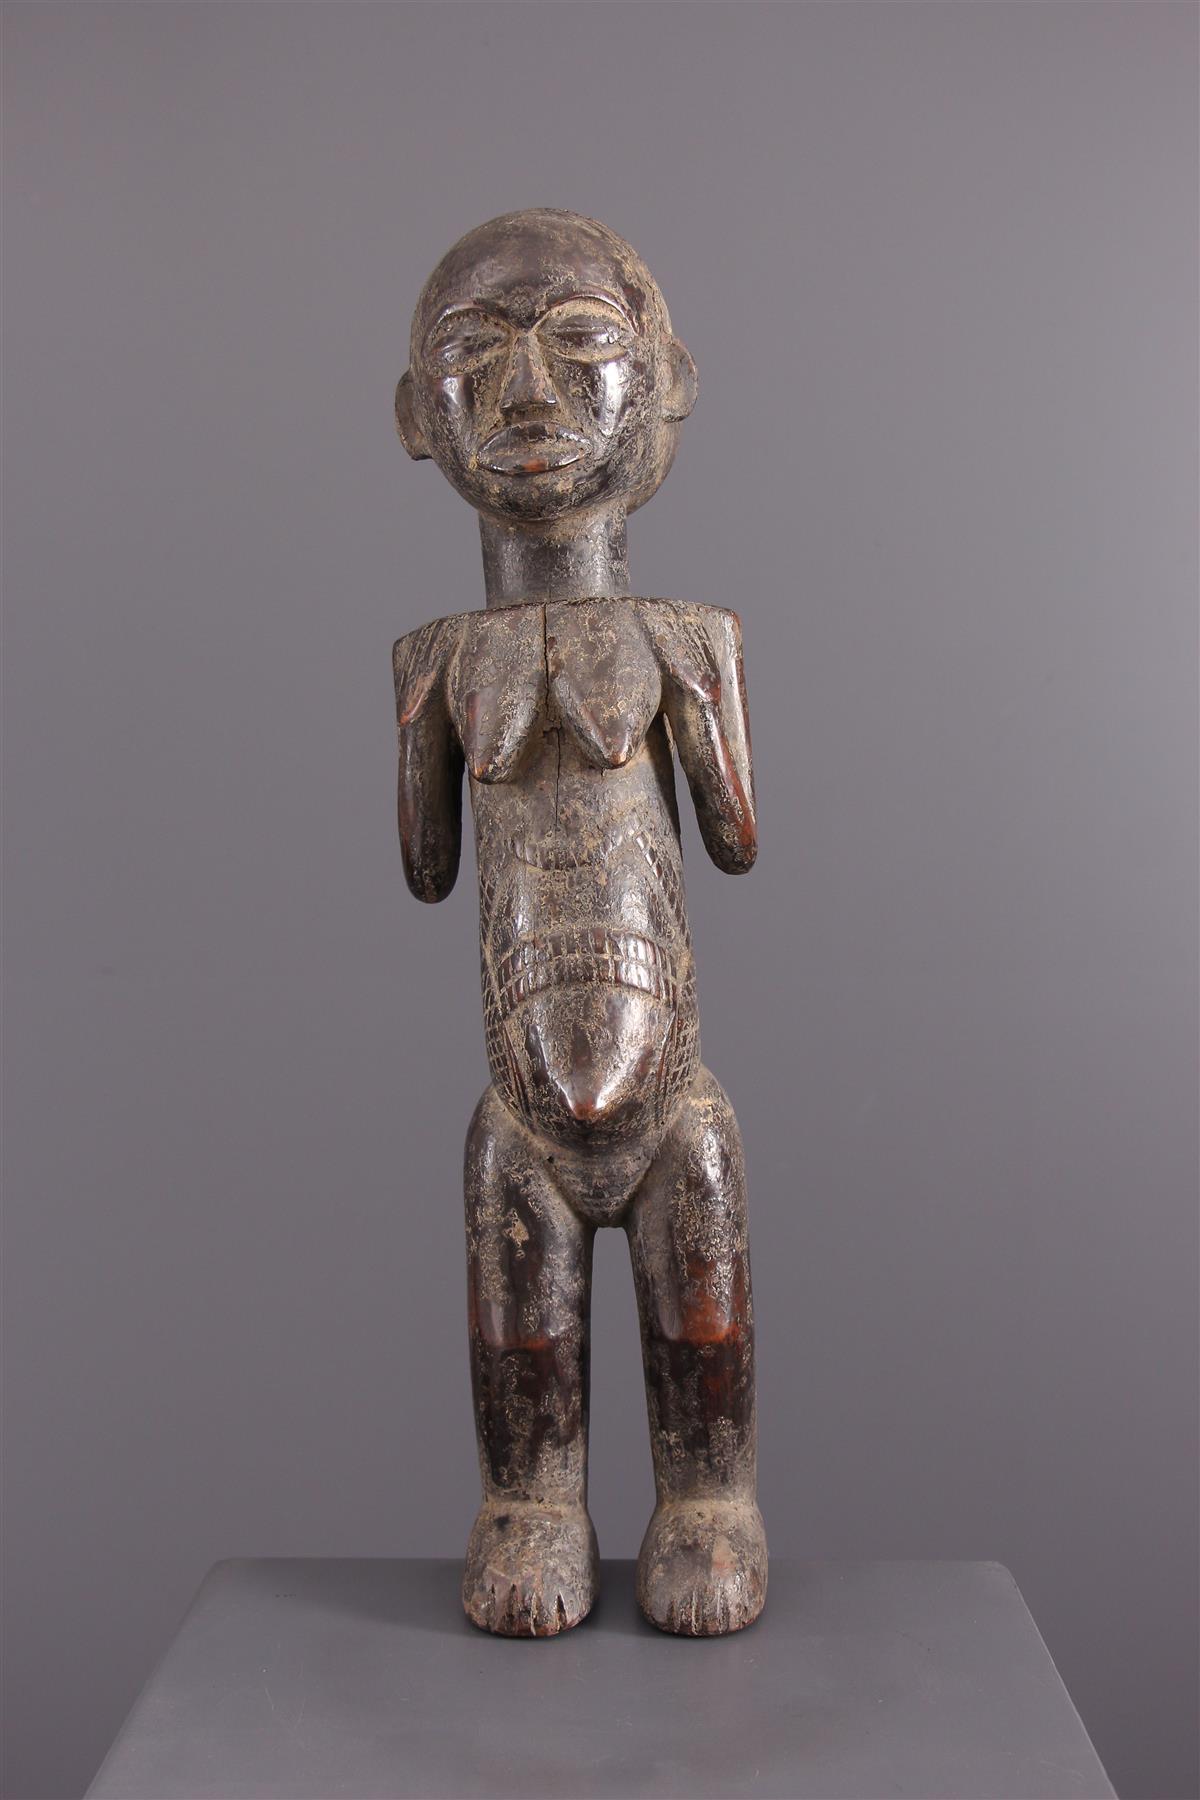 Luba statua - Arte africana